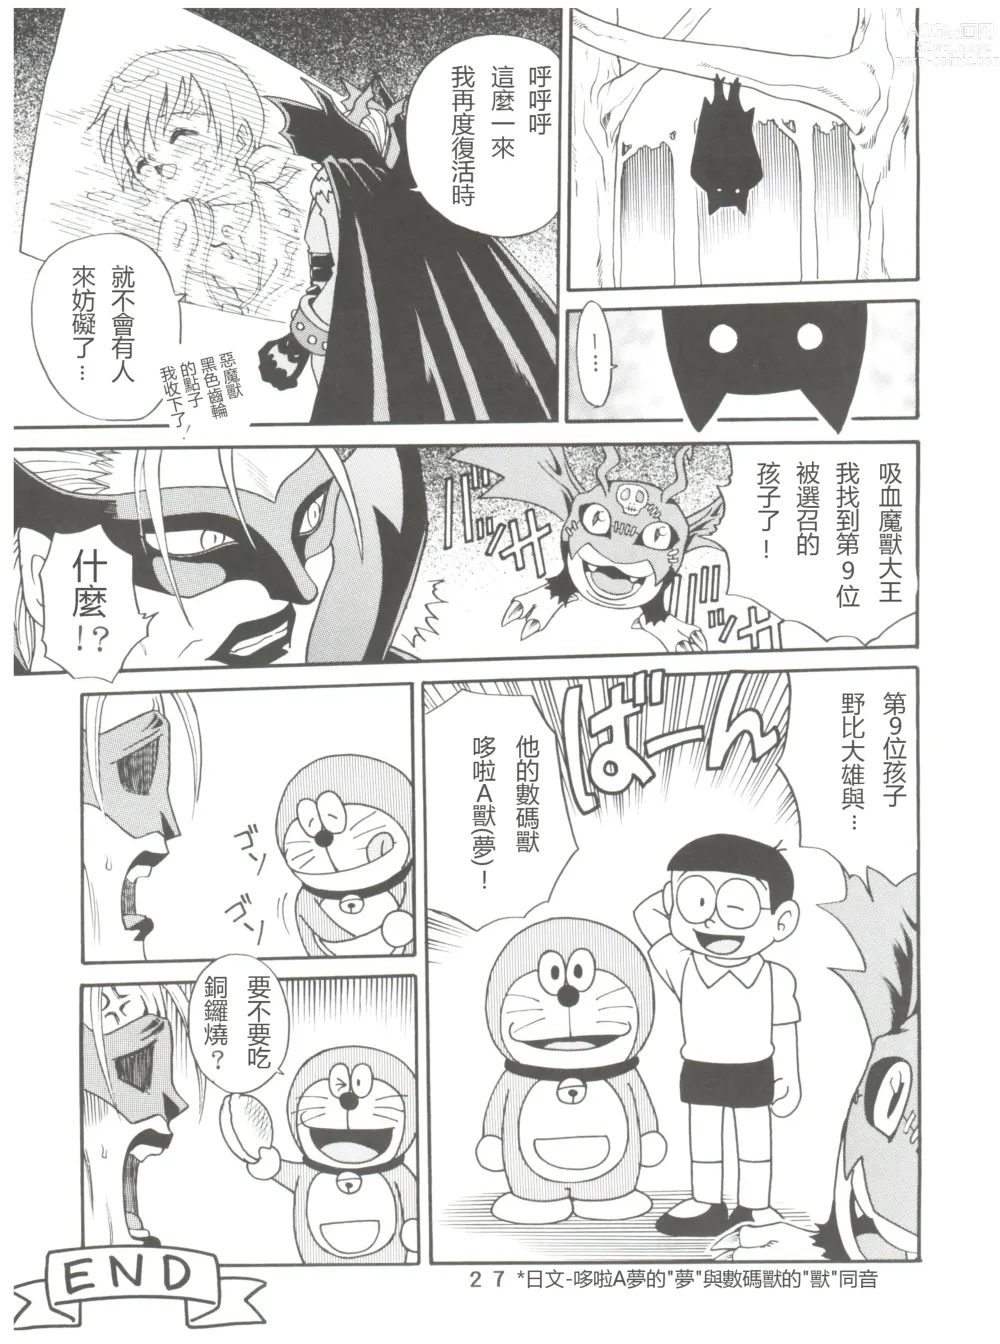 Page 27 of doujinshi Pichuu Pikachuu Daigyakusatsu